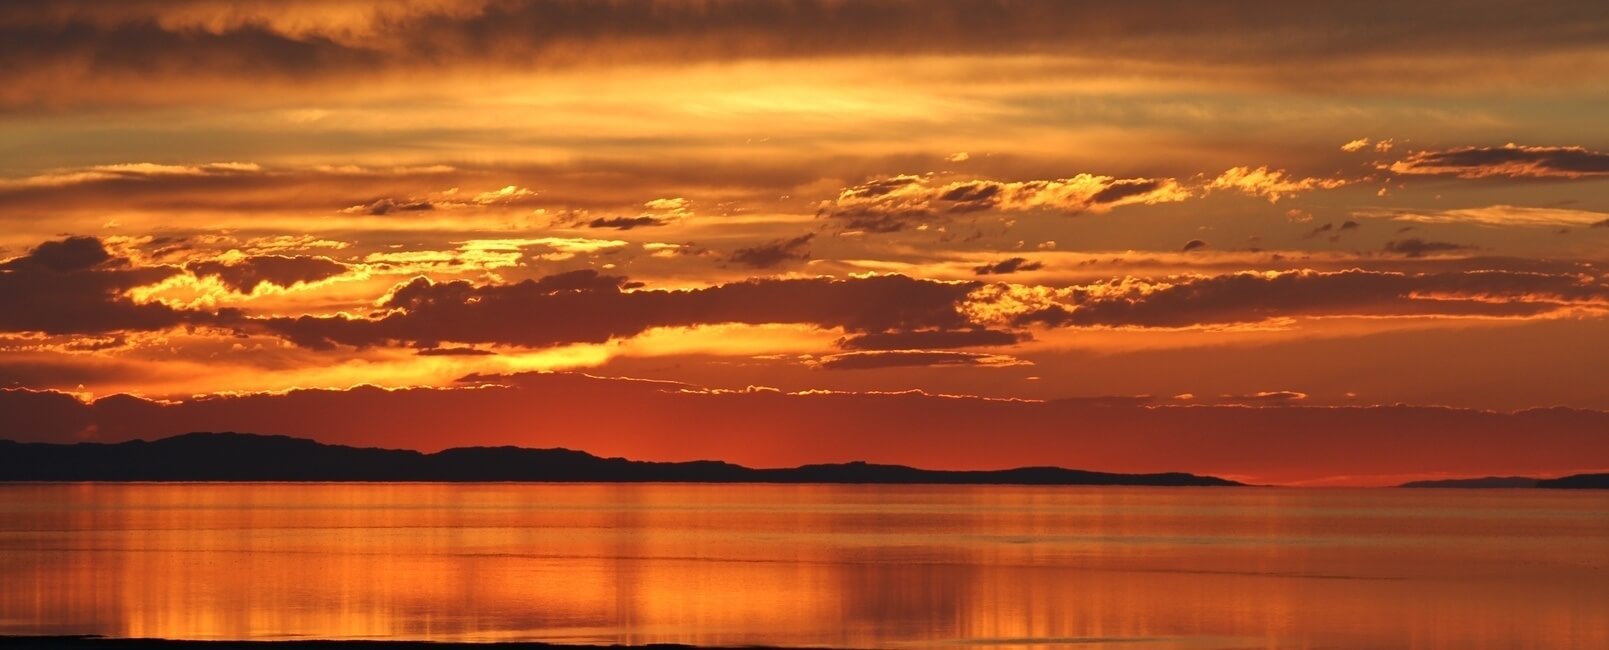 Sunset at Antelope Island, Utah